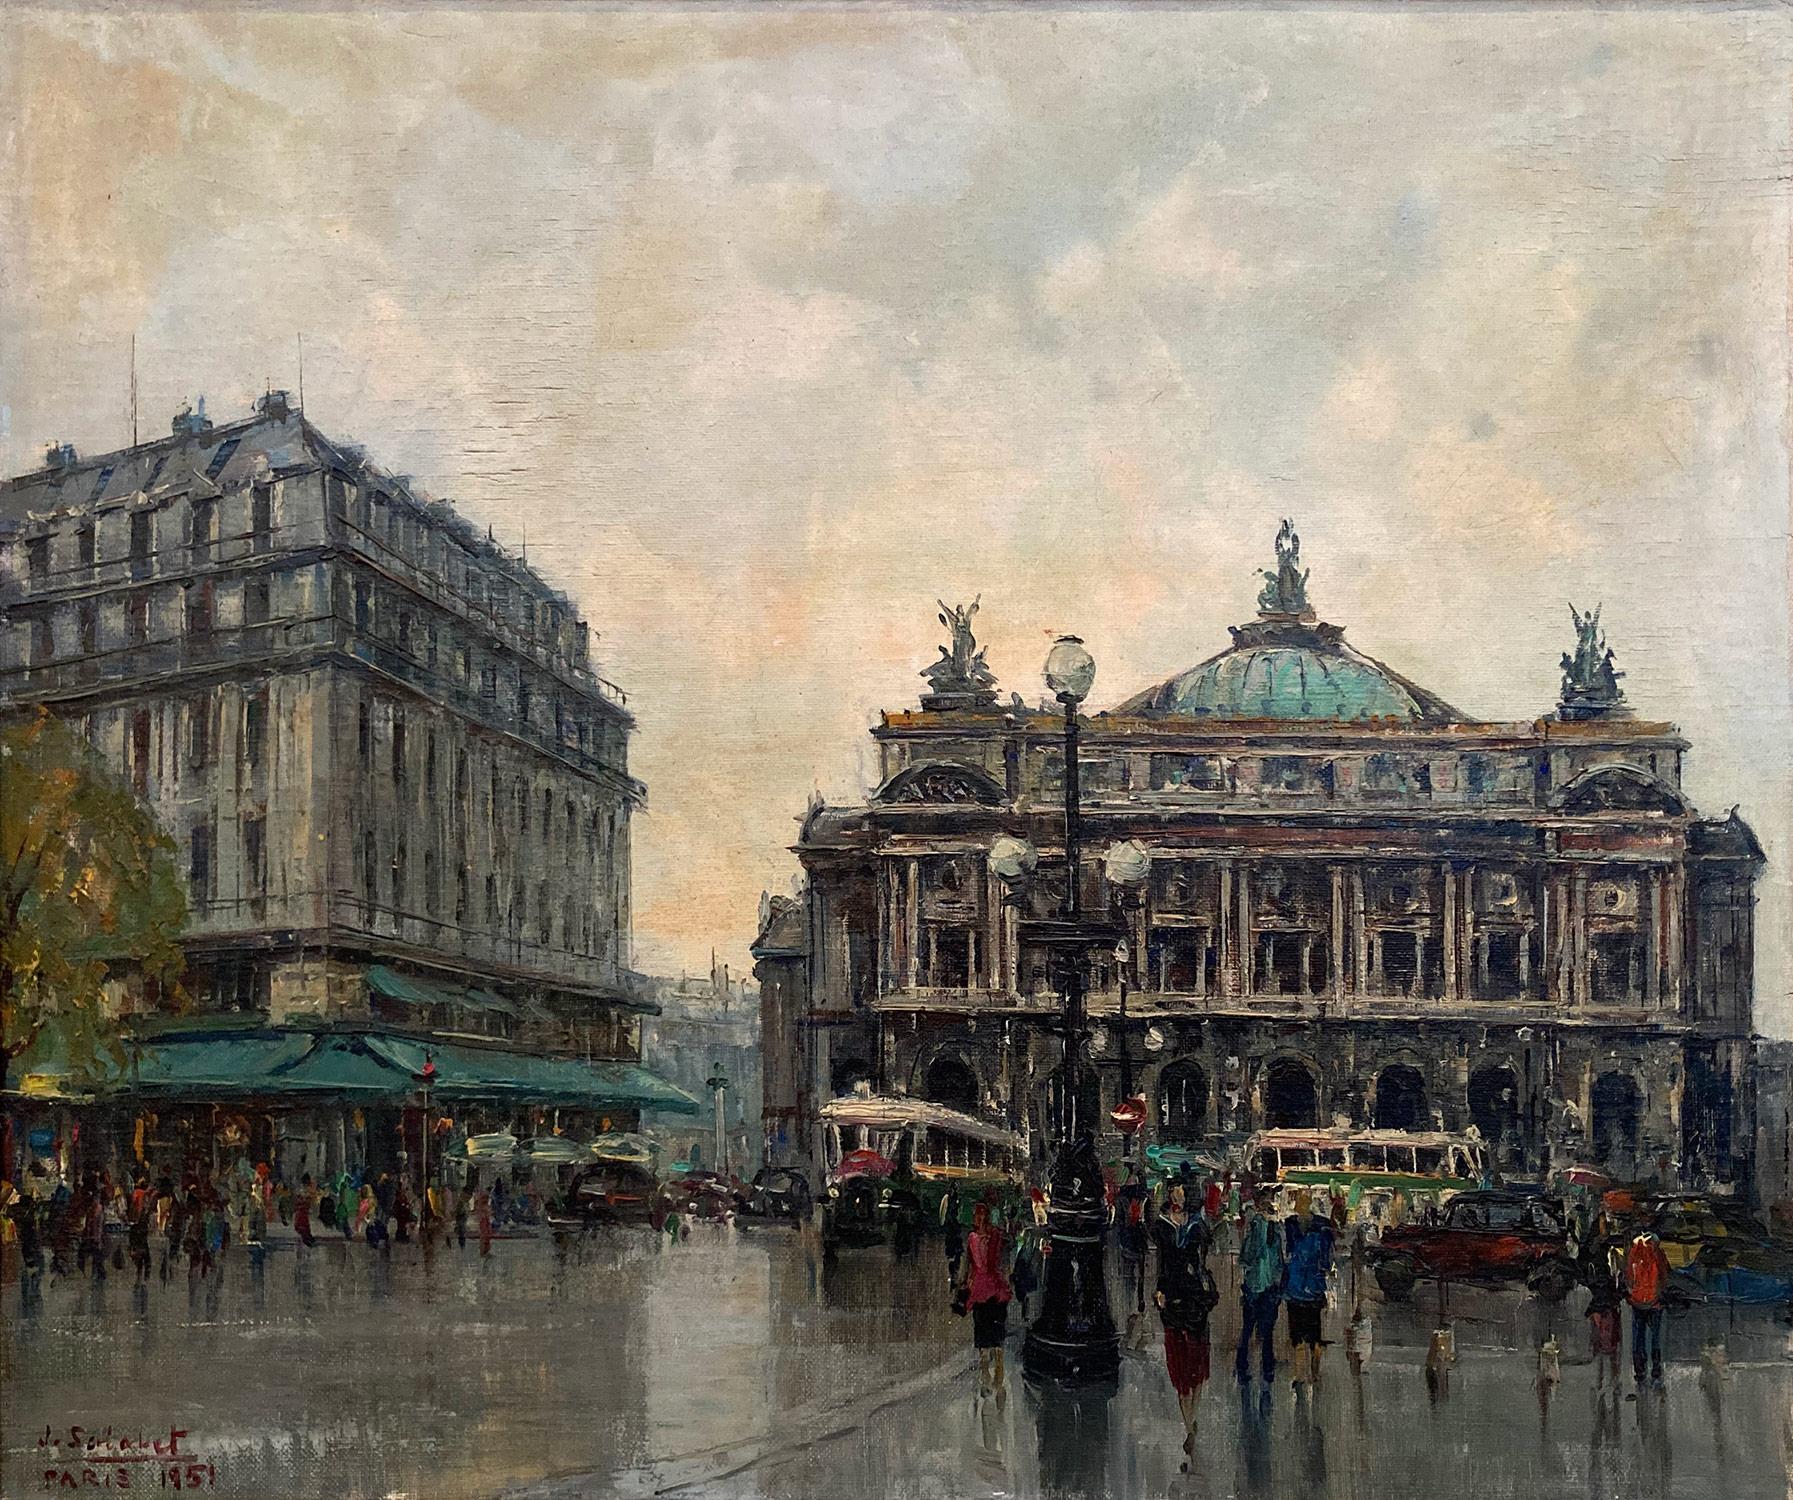 Peinture à l'huile sur toile « Palais Garnier » - Scène de rue parisienne post-impressionniste - Painting de Jean Salabet